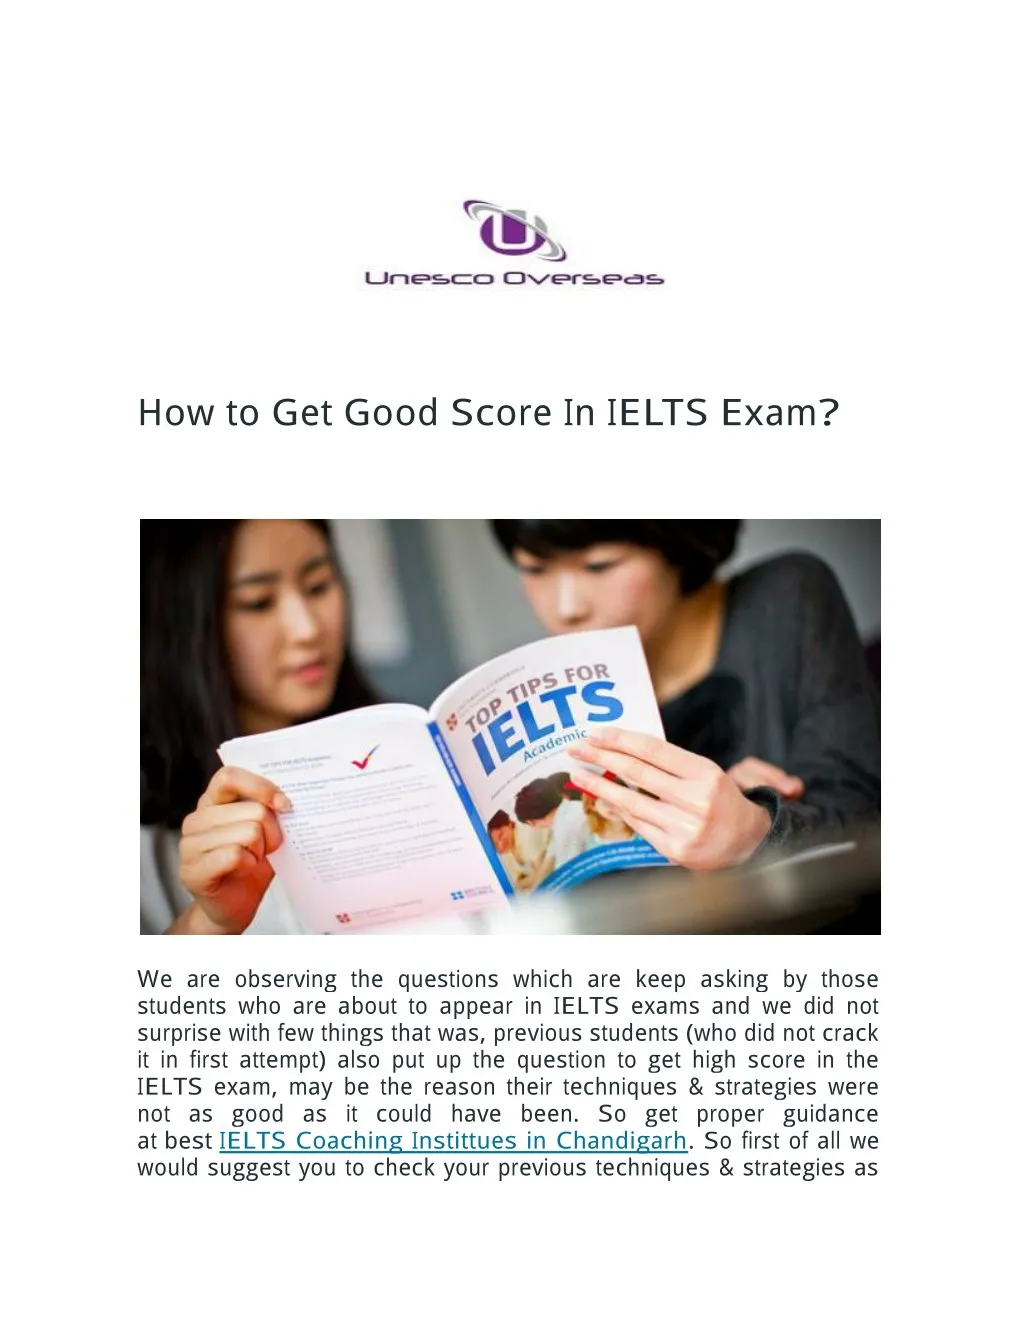 how to get good score in ielts exam